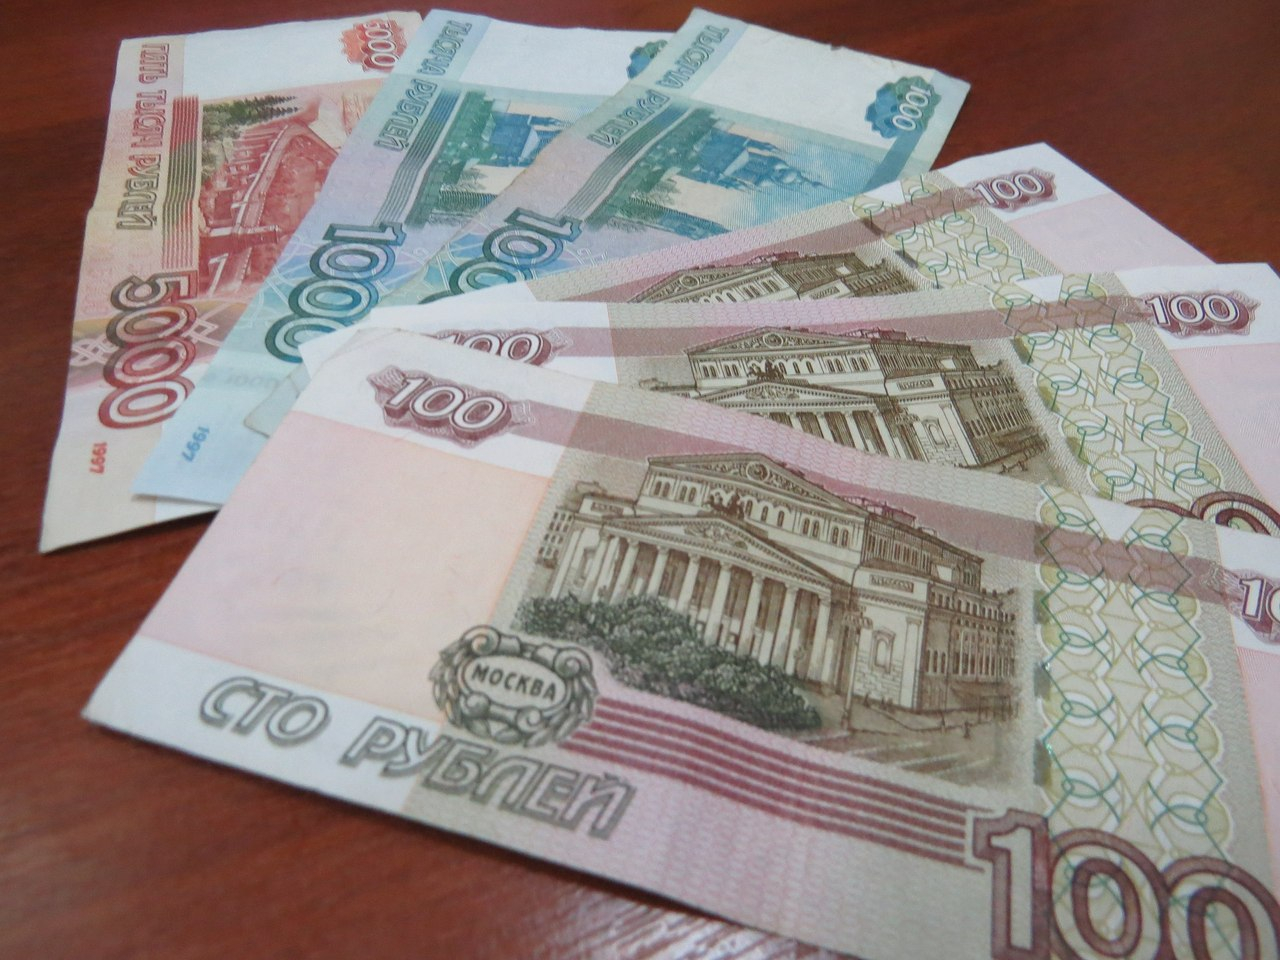 Три женщины украли деньги у спящего собутыльника и отправились развлекаться в Саранск